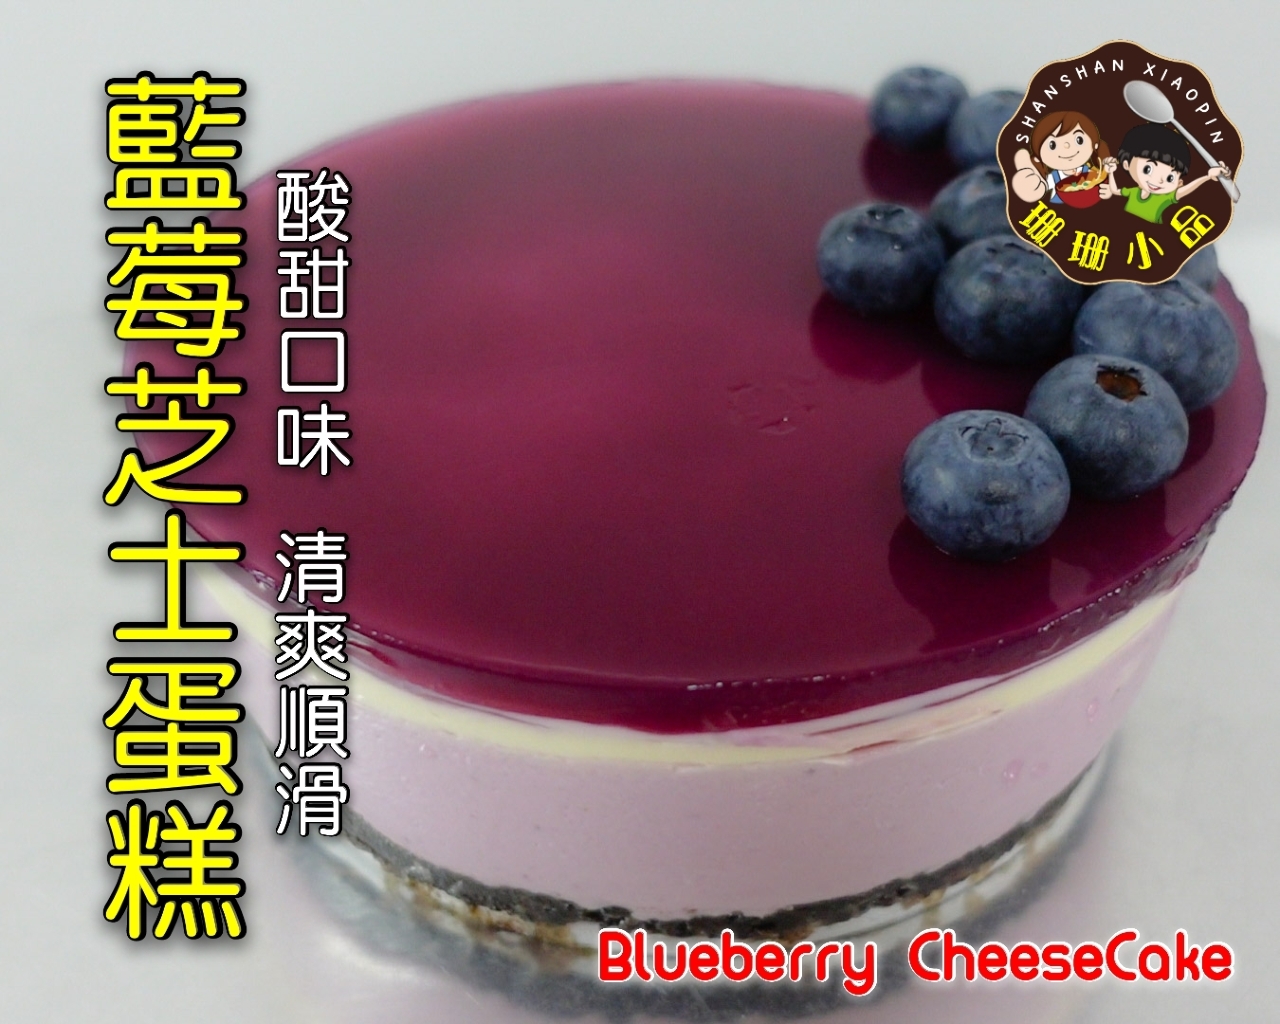 藍莓芝士蛋糕，酸甜口味搭上香濃芝士，清爽順滑 - Blueberry Cheese Cake的做法